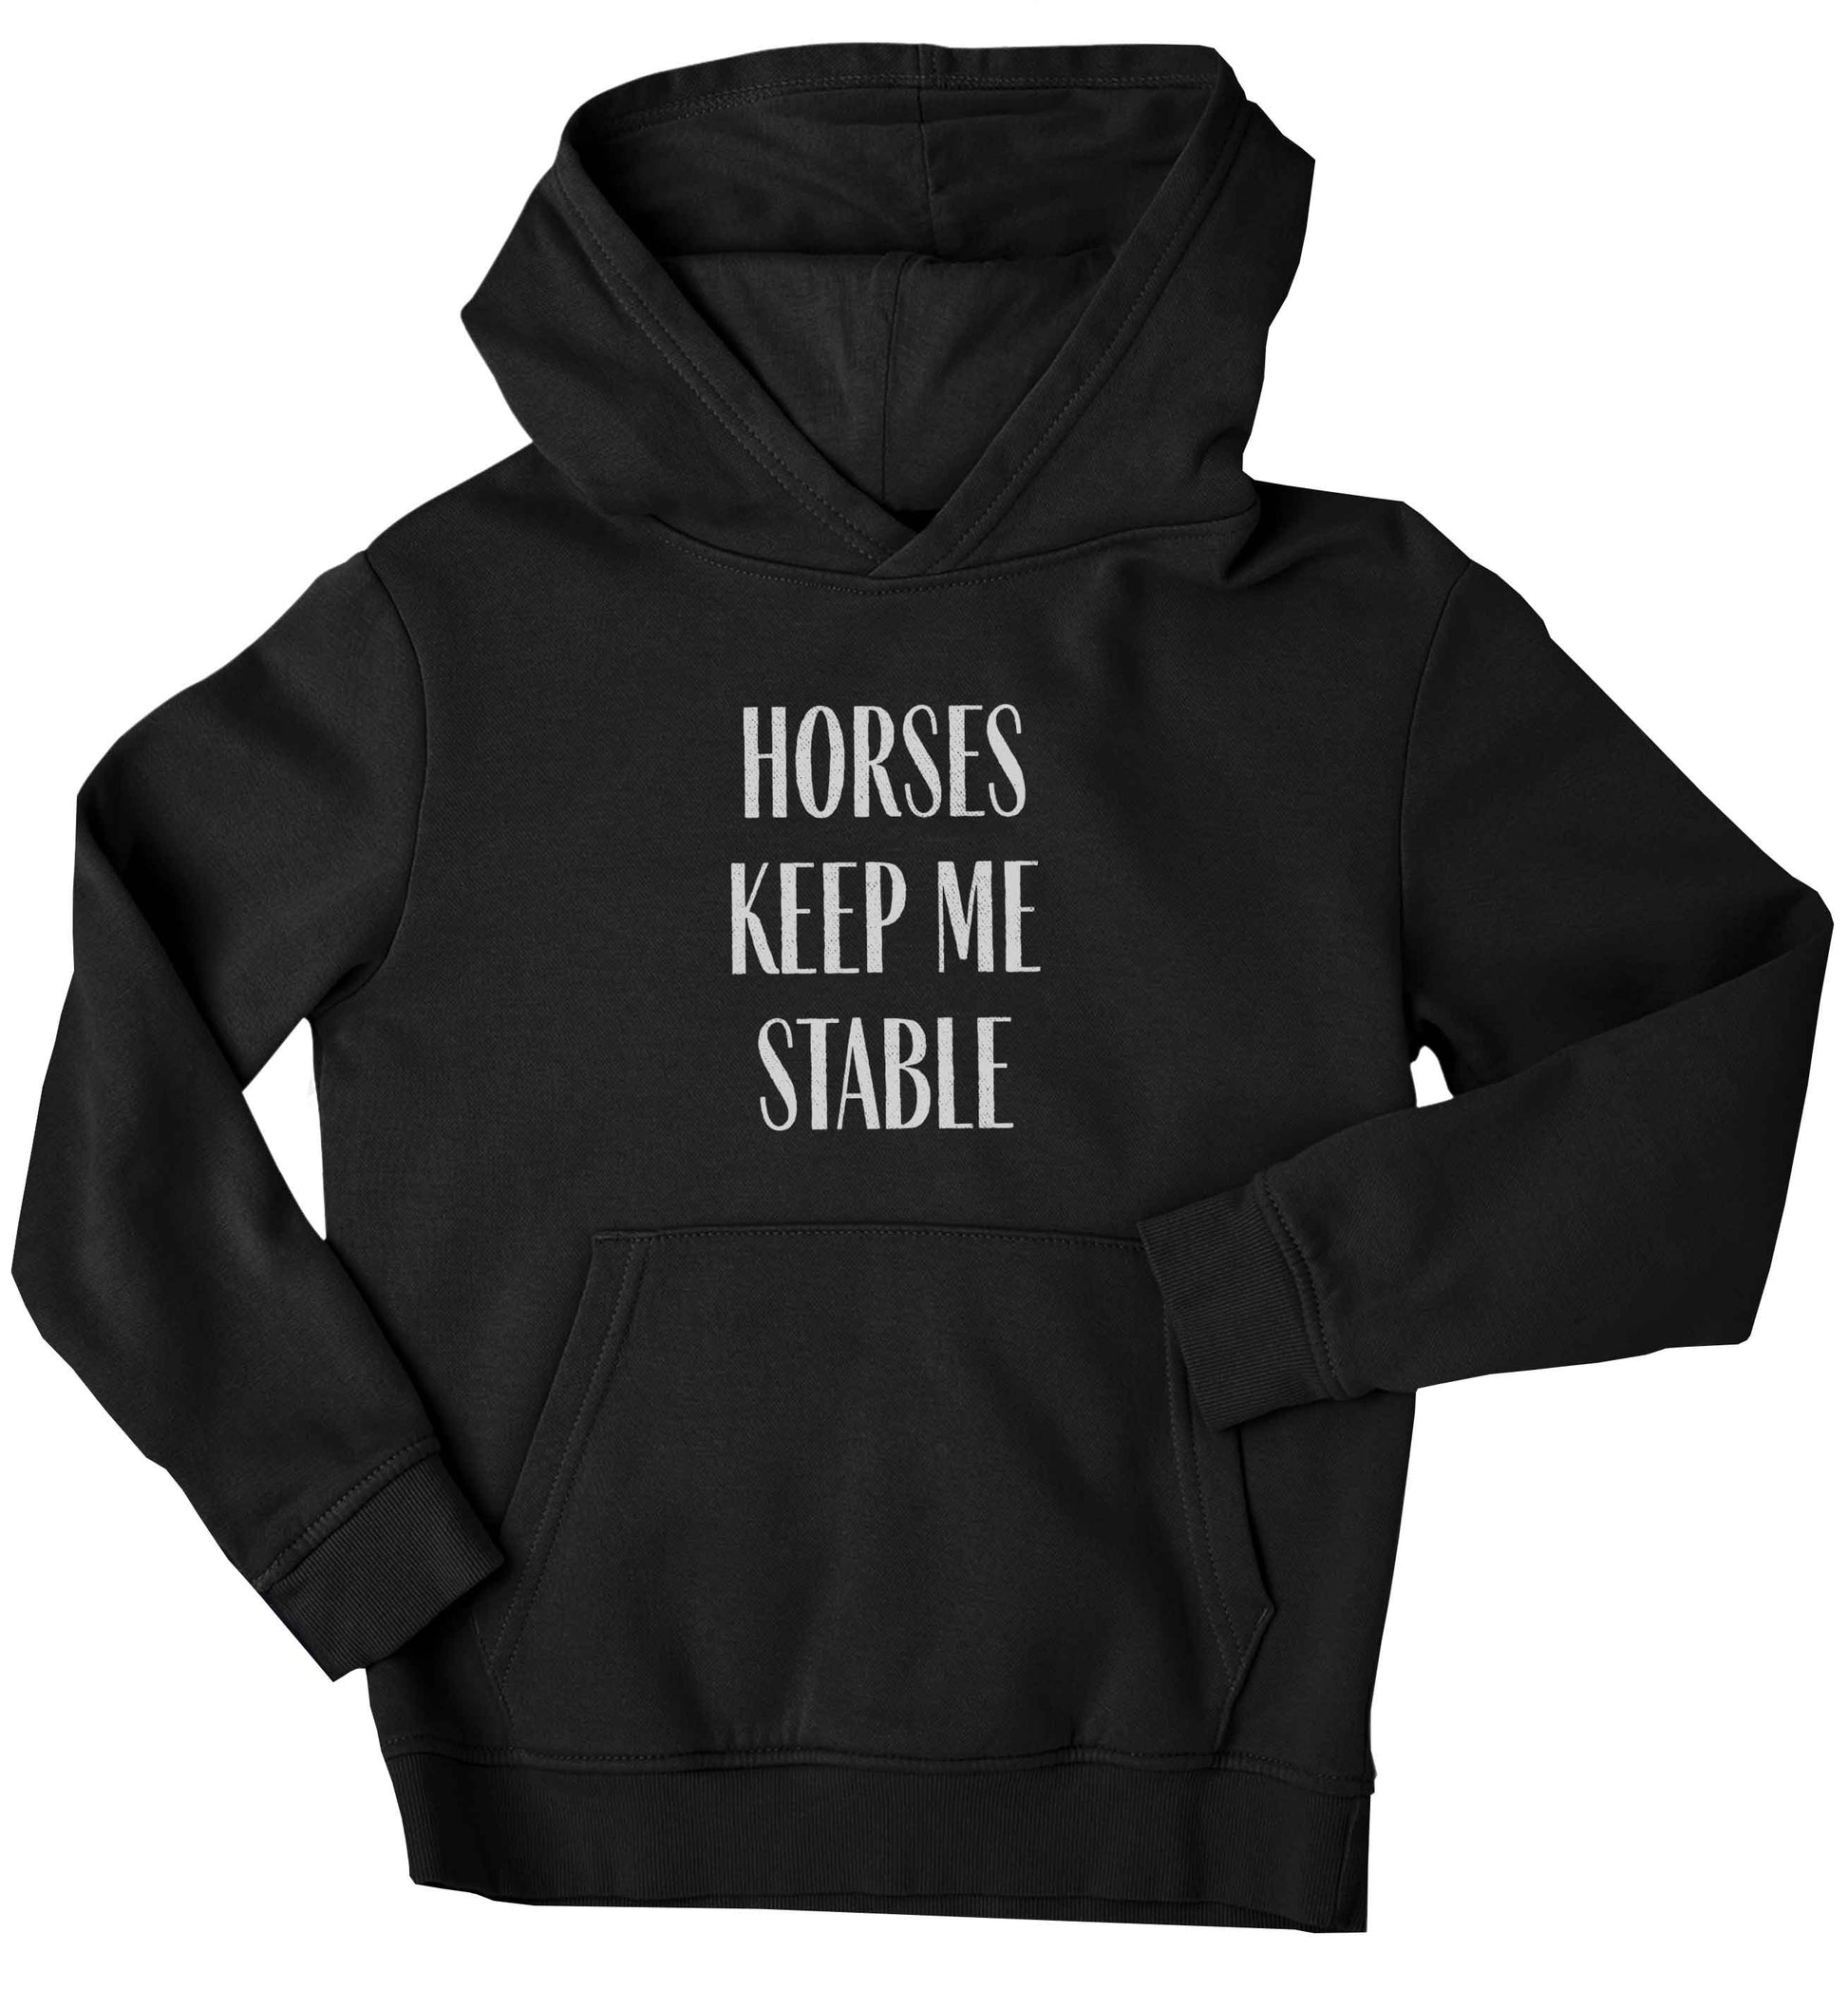 Horses keep me stable children's black hoodie 12-13 Years